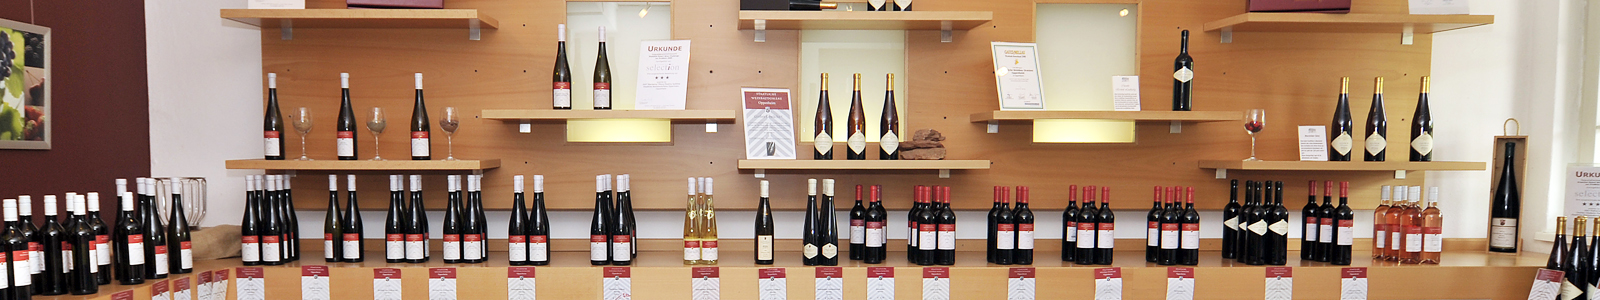 Weinflaschen im Verkaufsregal des Staatsweingutes ©DLR